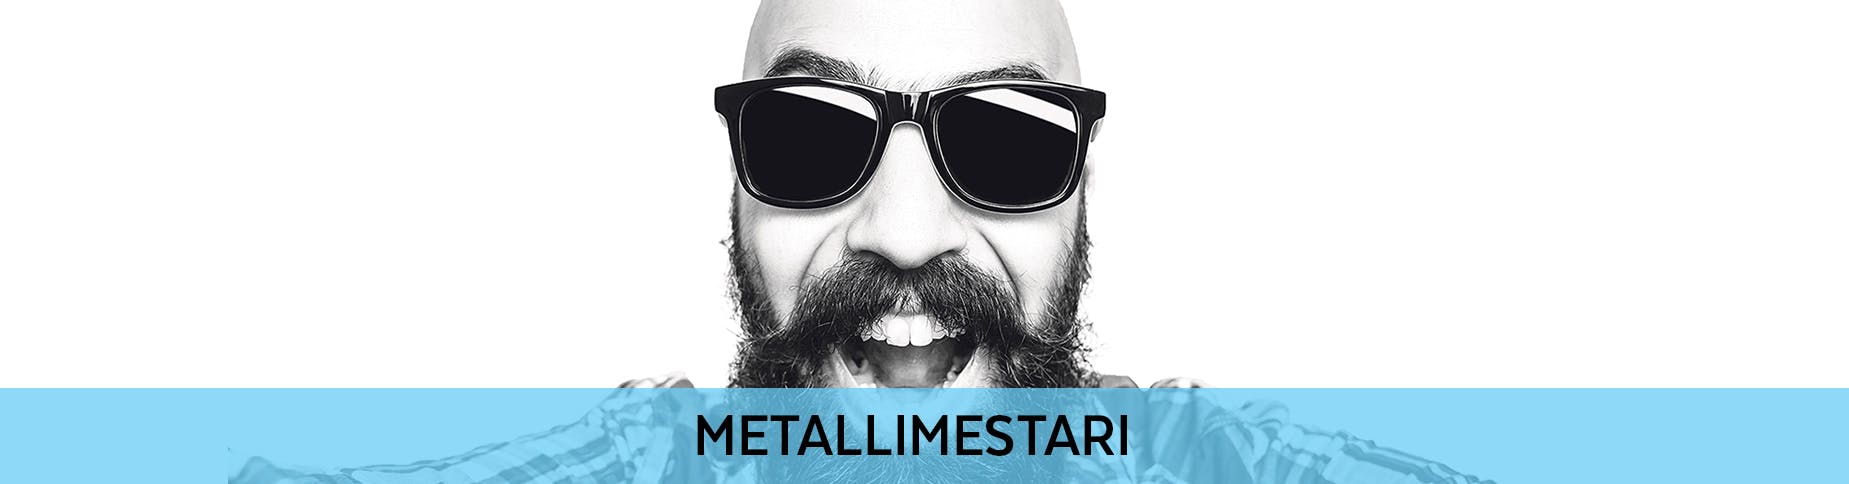 Metallimestari – opi rautaiseksi ammattilaiseksi